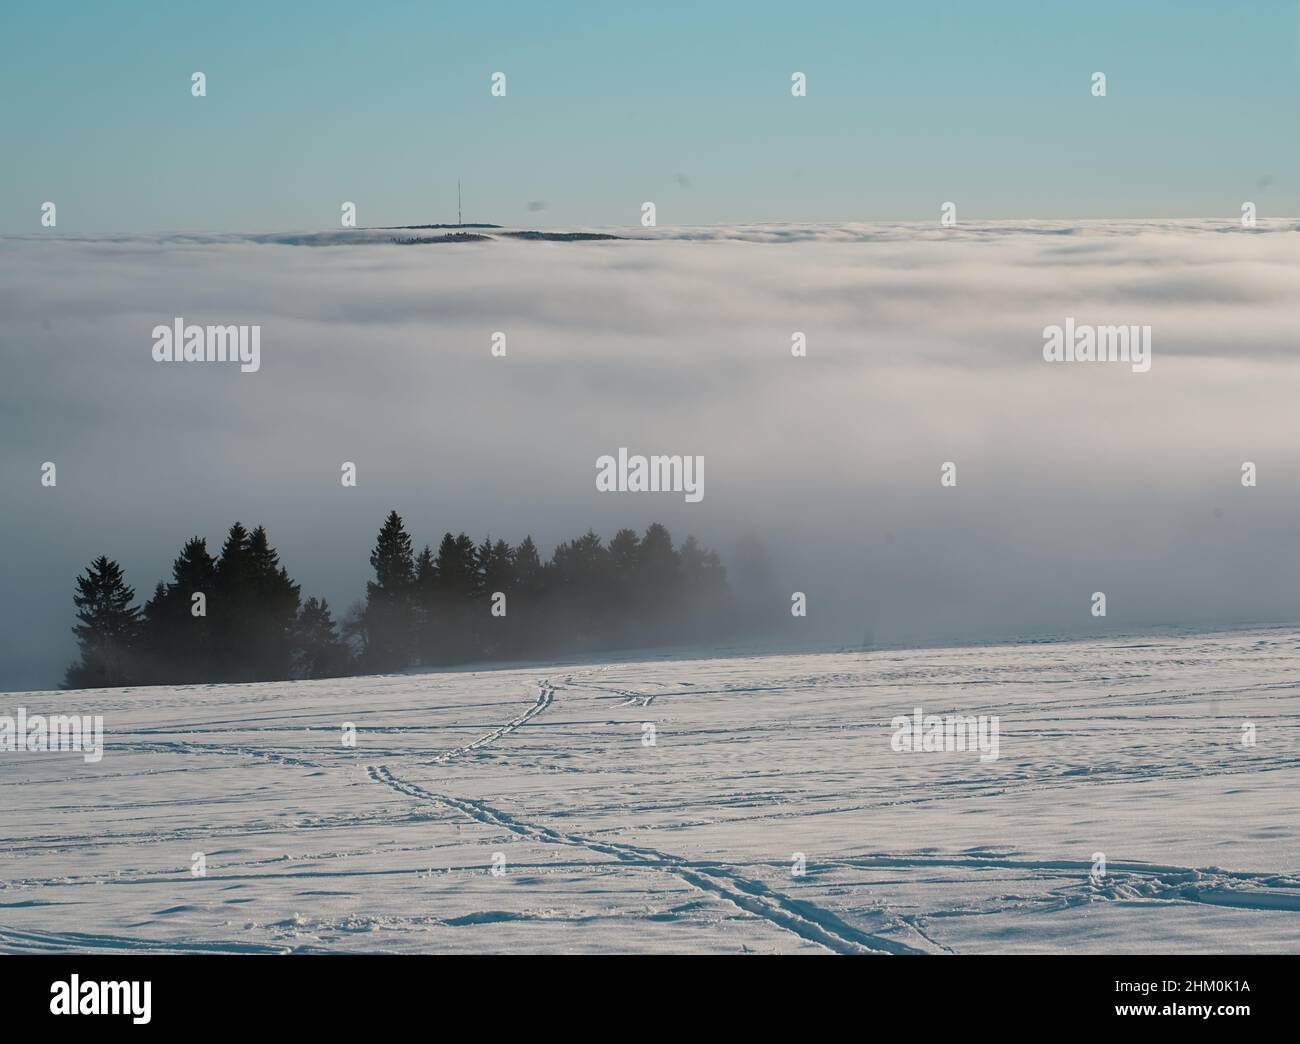 Das Konzept der Entspannung in den Bergen im Winter im Schnee auf Skiern, Snowboards oder Schlitten, Wandern unter der untergehenden Sonne bei Sonnenuntergang auf der Stockfoto